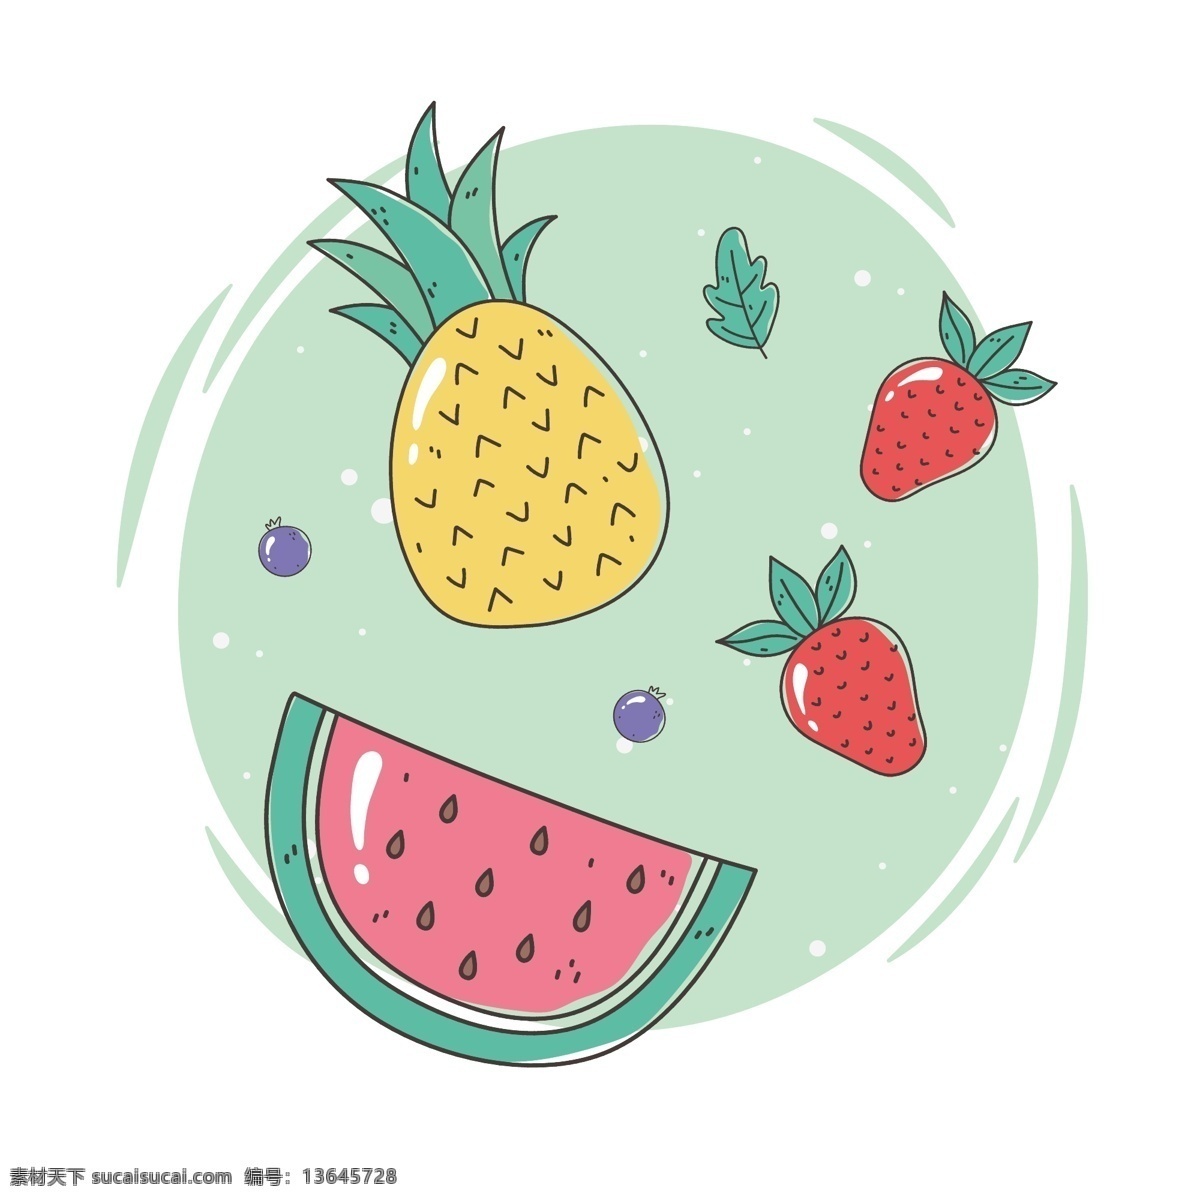 手绘水果 水果 手绘 卡通水果 水果背景 水果素材 绿色水果 果蔬 果汁 食品 食品蔬菜水果 生物世界